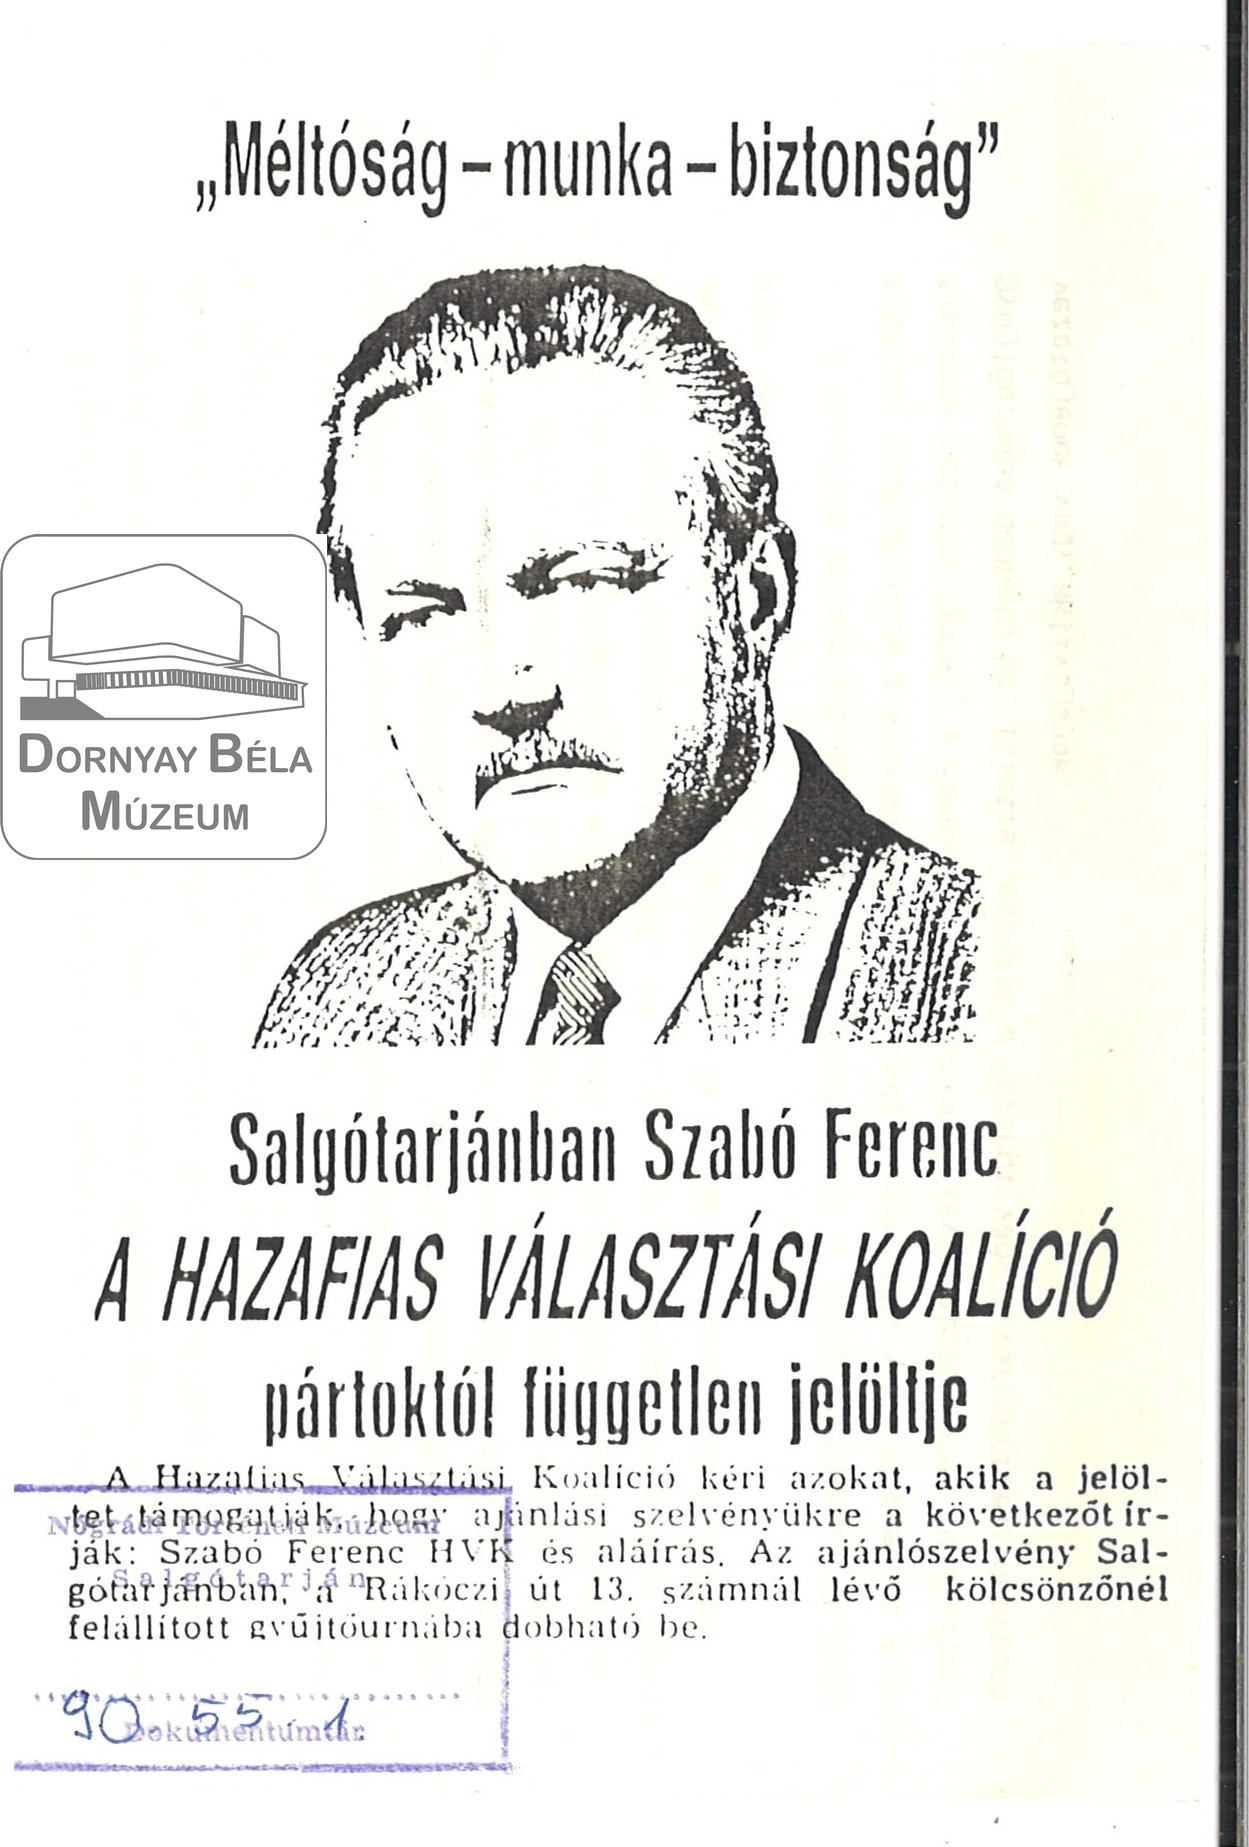 Szabó Ferenc H.V.K. független jelöltje. (Dornyay Béla Múzeum, Salgótarján CC BY-NC-SA)